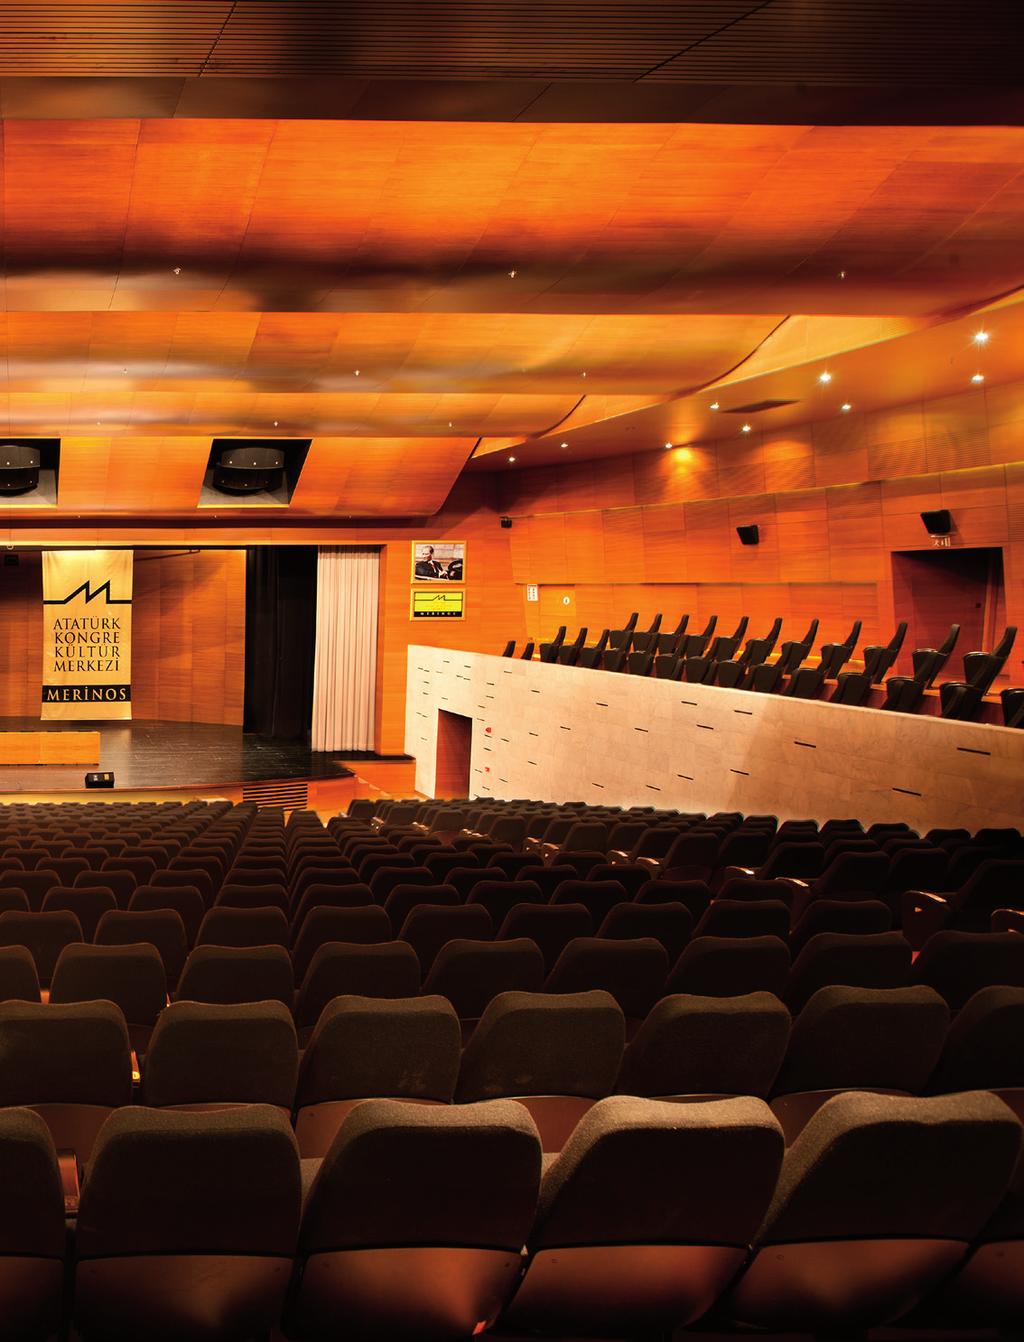 Atatürk Kongre Kültür Merkezi - Merinos AKKM Orhangazi Salonu 813 koltuk kapasiteli Orhangazi Salonu modern teknik altyapısı ile konferans, konser, tiyatro ve sinema gösterimine olanak sağlayacak